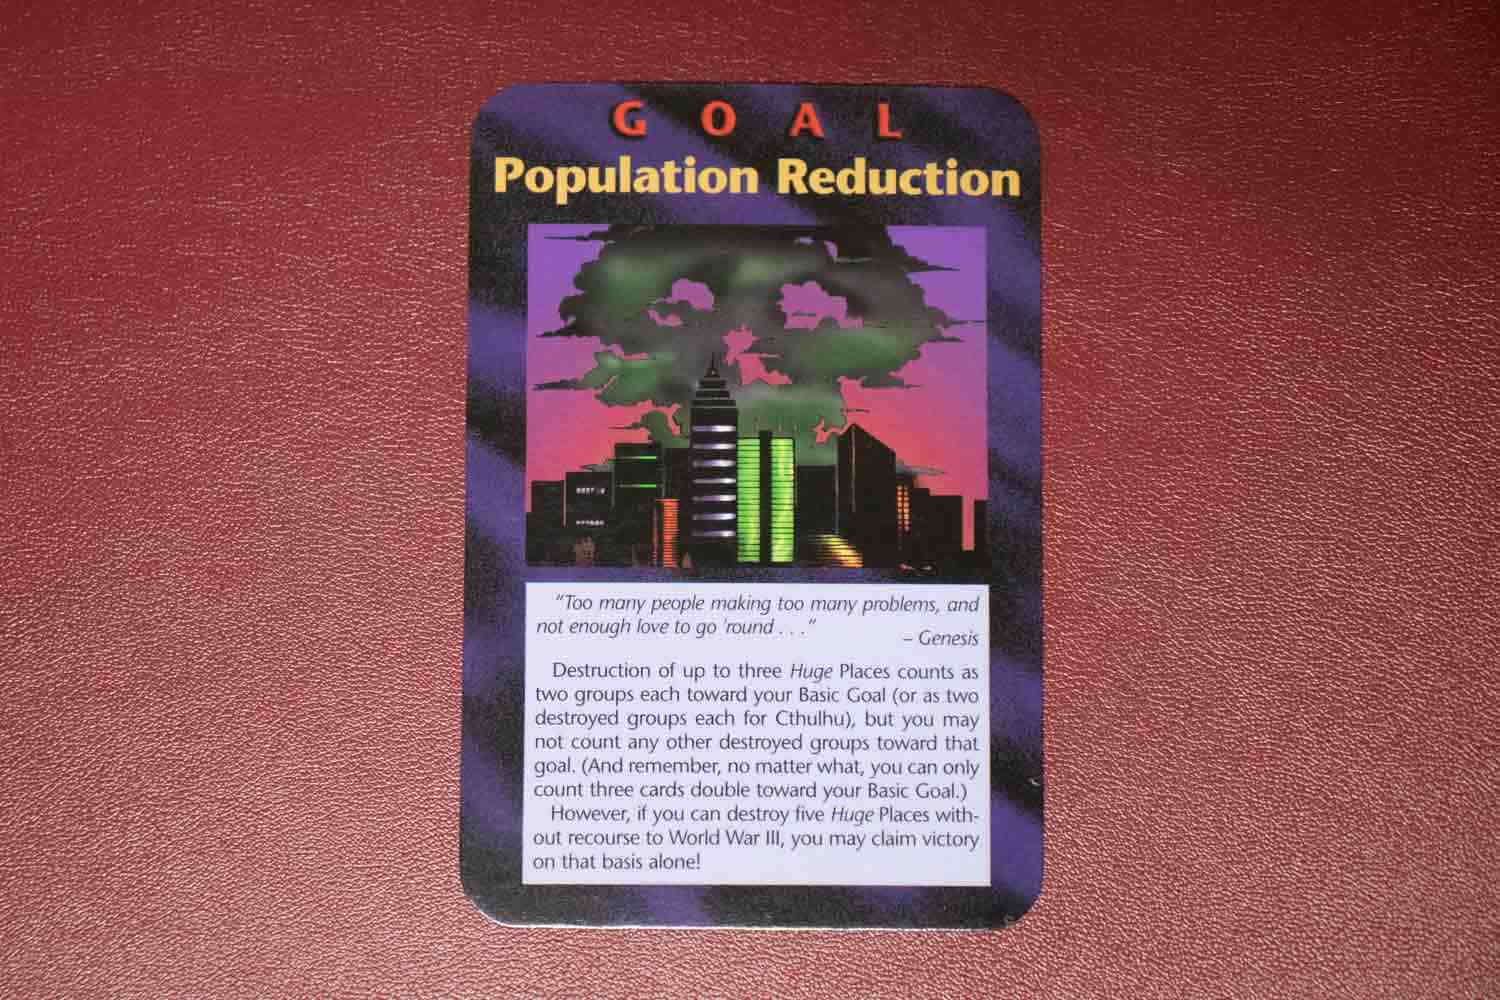 【イルミナティカード】Population Reductionの詳細と都市伝説まとめ【人口削減】